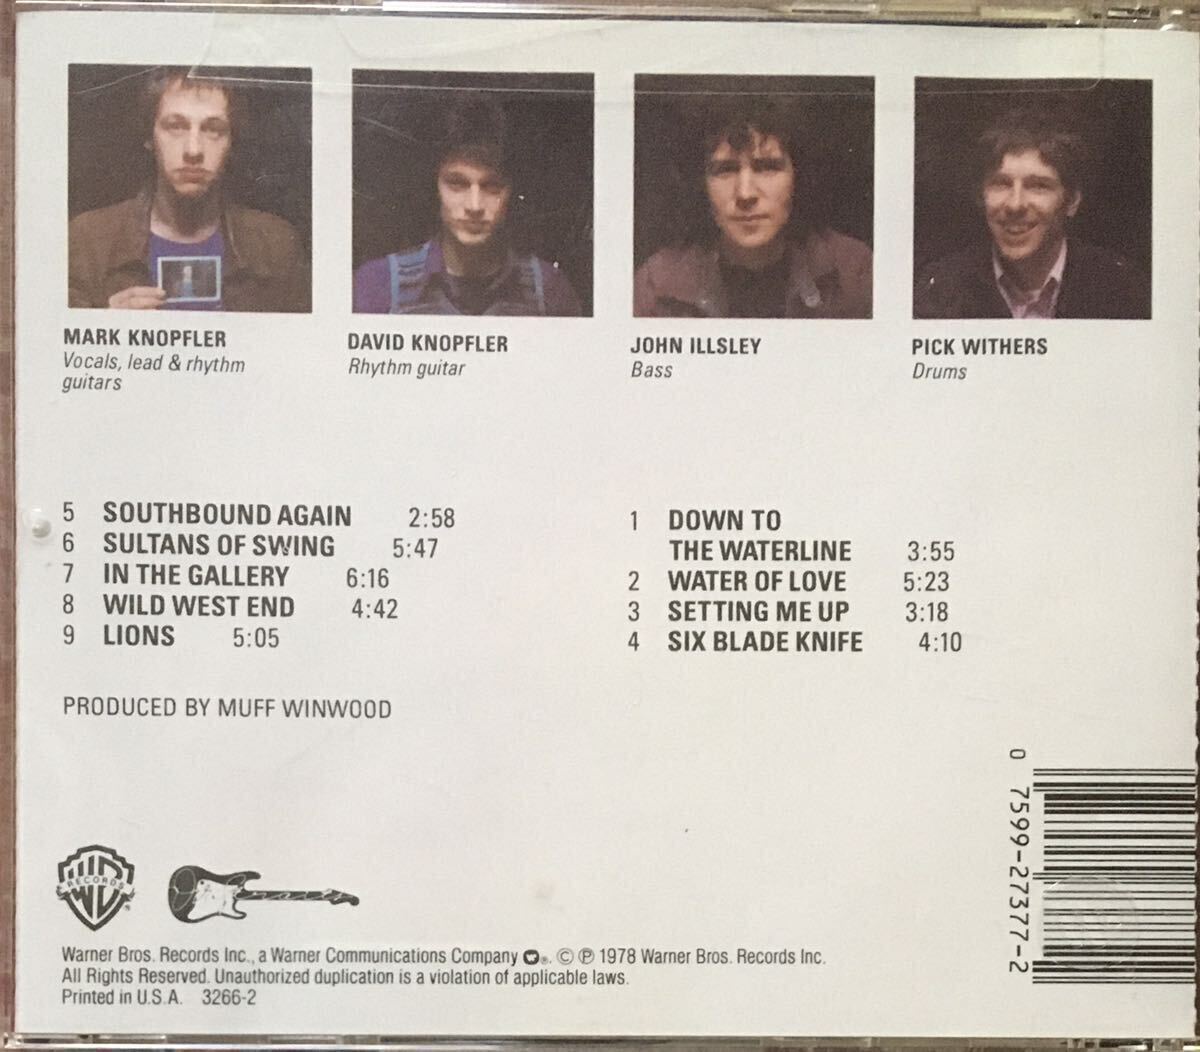 Dire Straits / 78年大名盤ファースト / ブリティッシュロック / パブロック / 英国スワンプ / ルーツロック / New Wave / Mark Knopfler_画像2